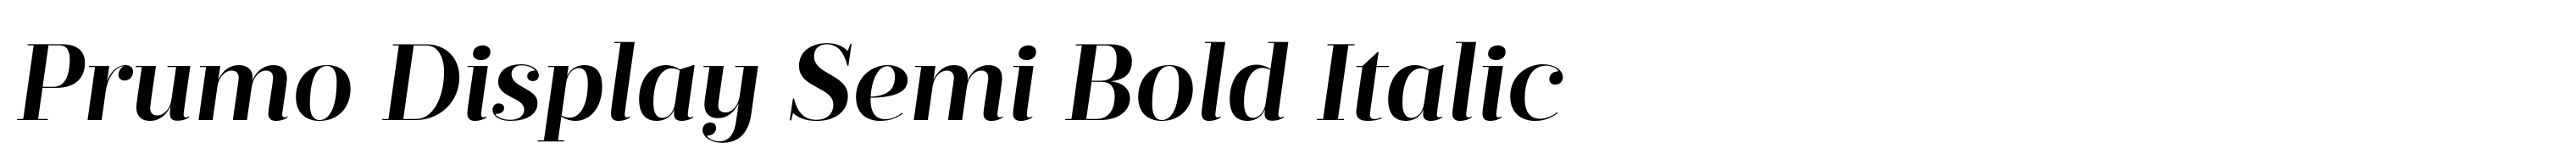 Prumo Display Semi Bold Italic